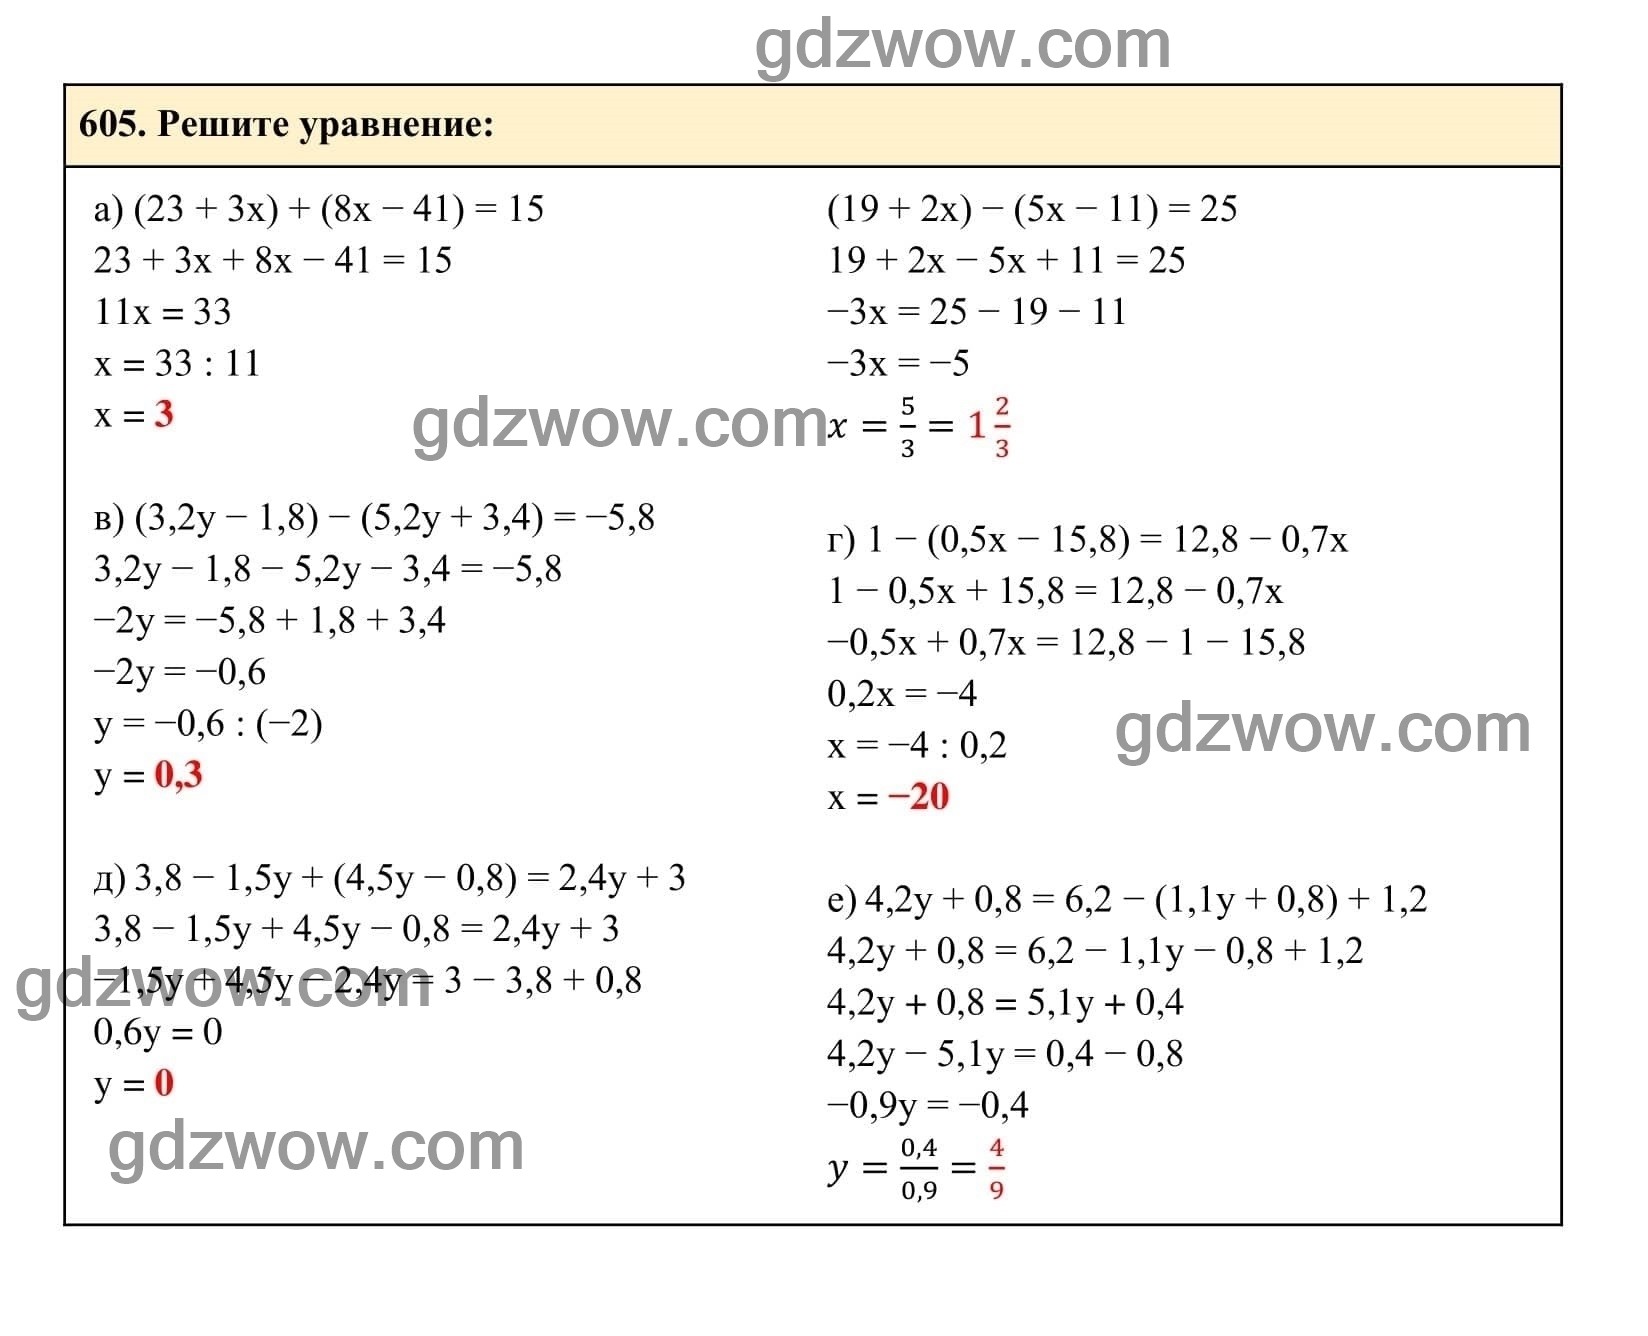 Упражнение 605 - ГДЗ по Алгебре 7 класс Учебник Макарычев (решебник) - GDZwow